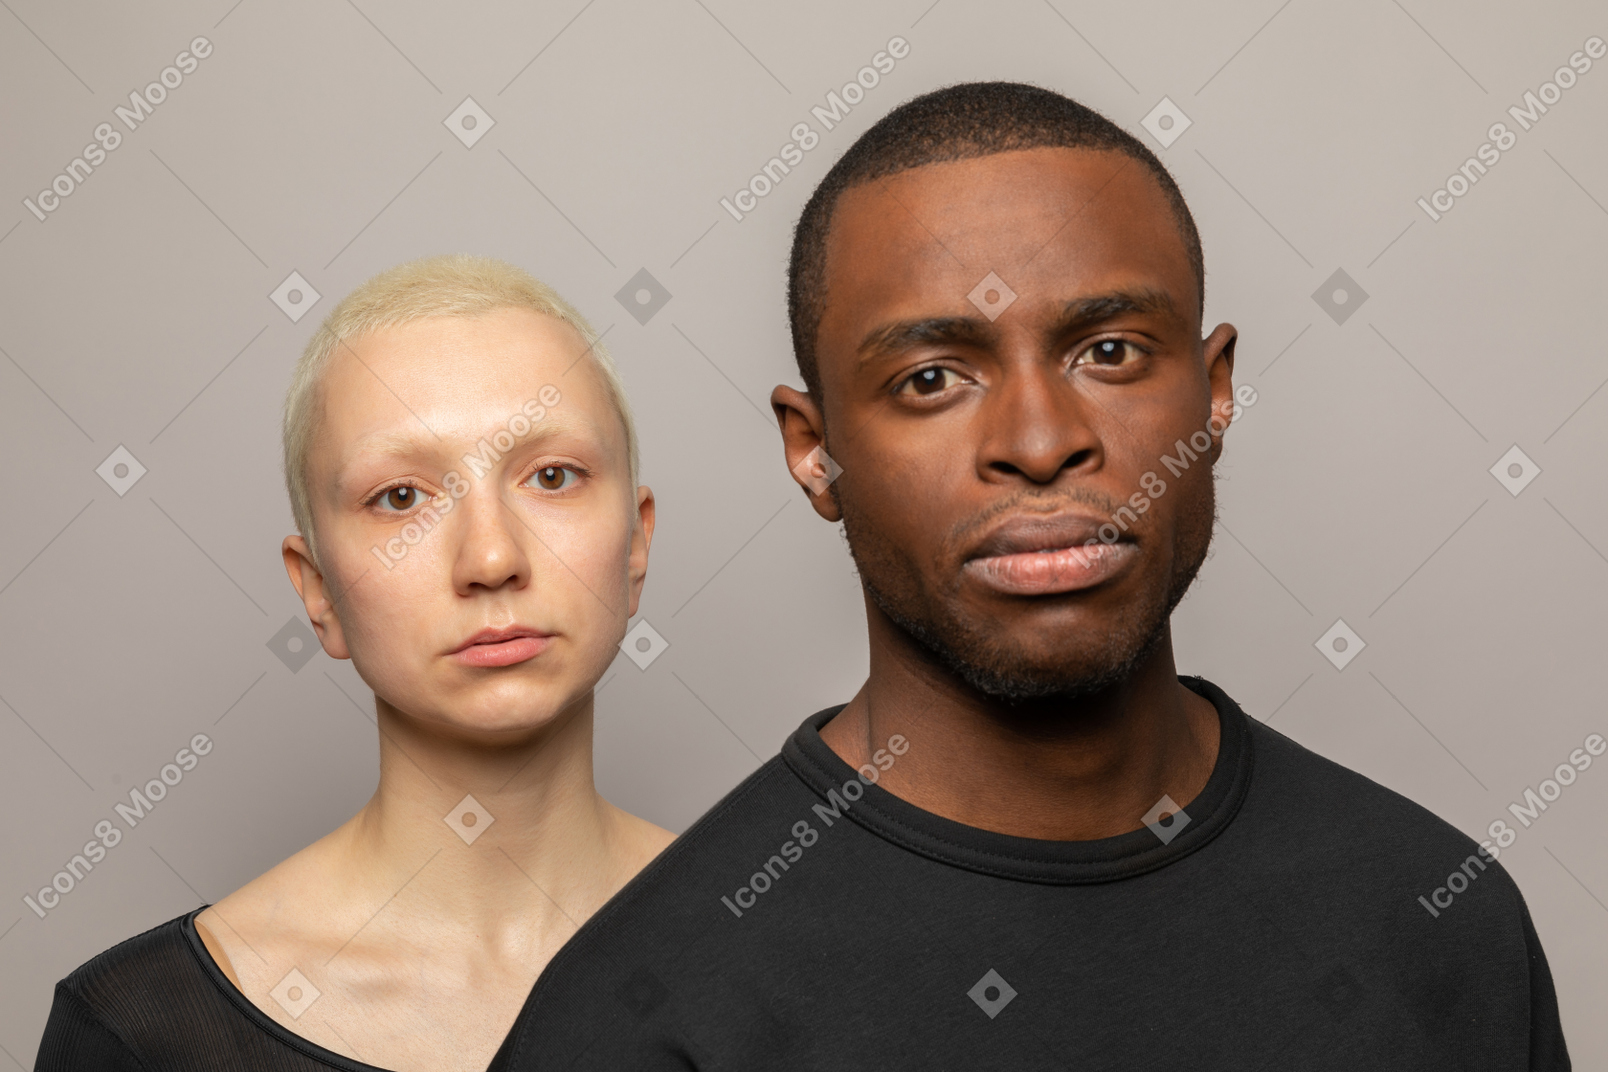 Young man and woman looking at camera